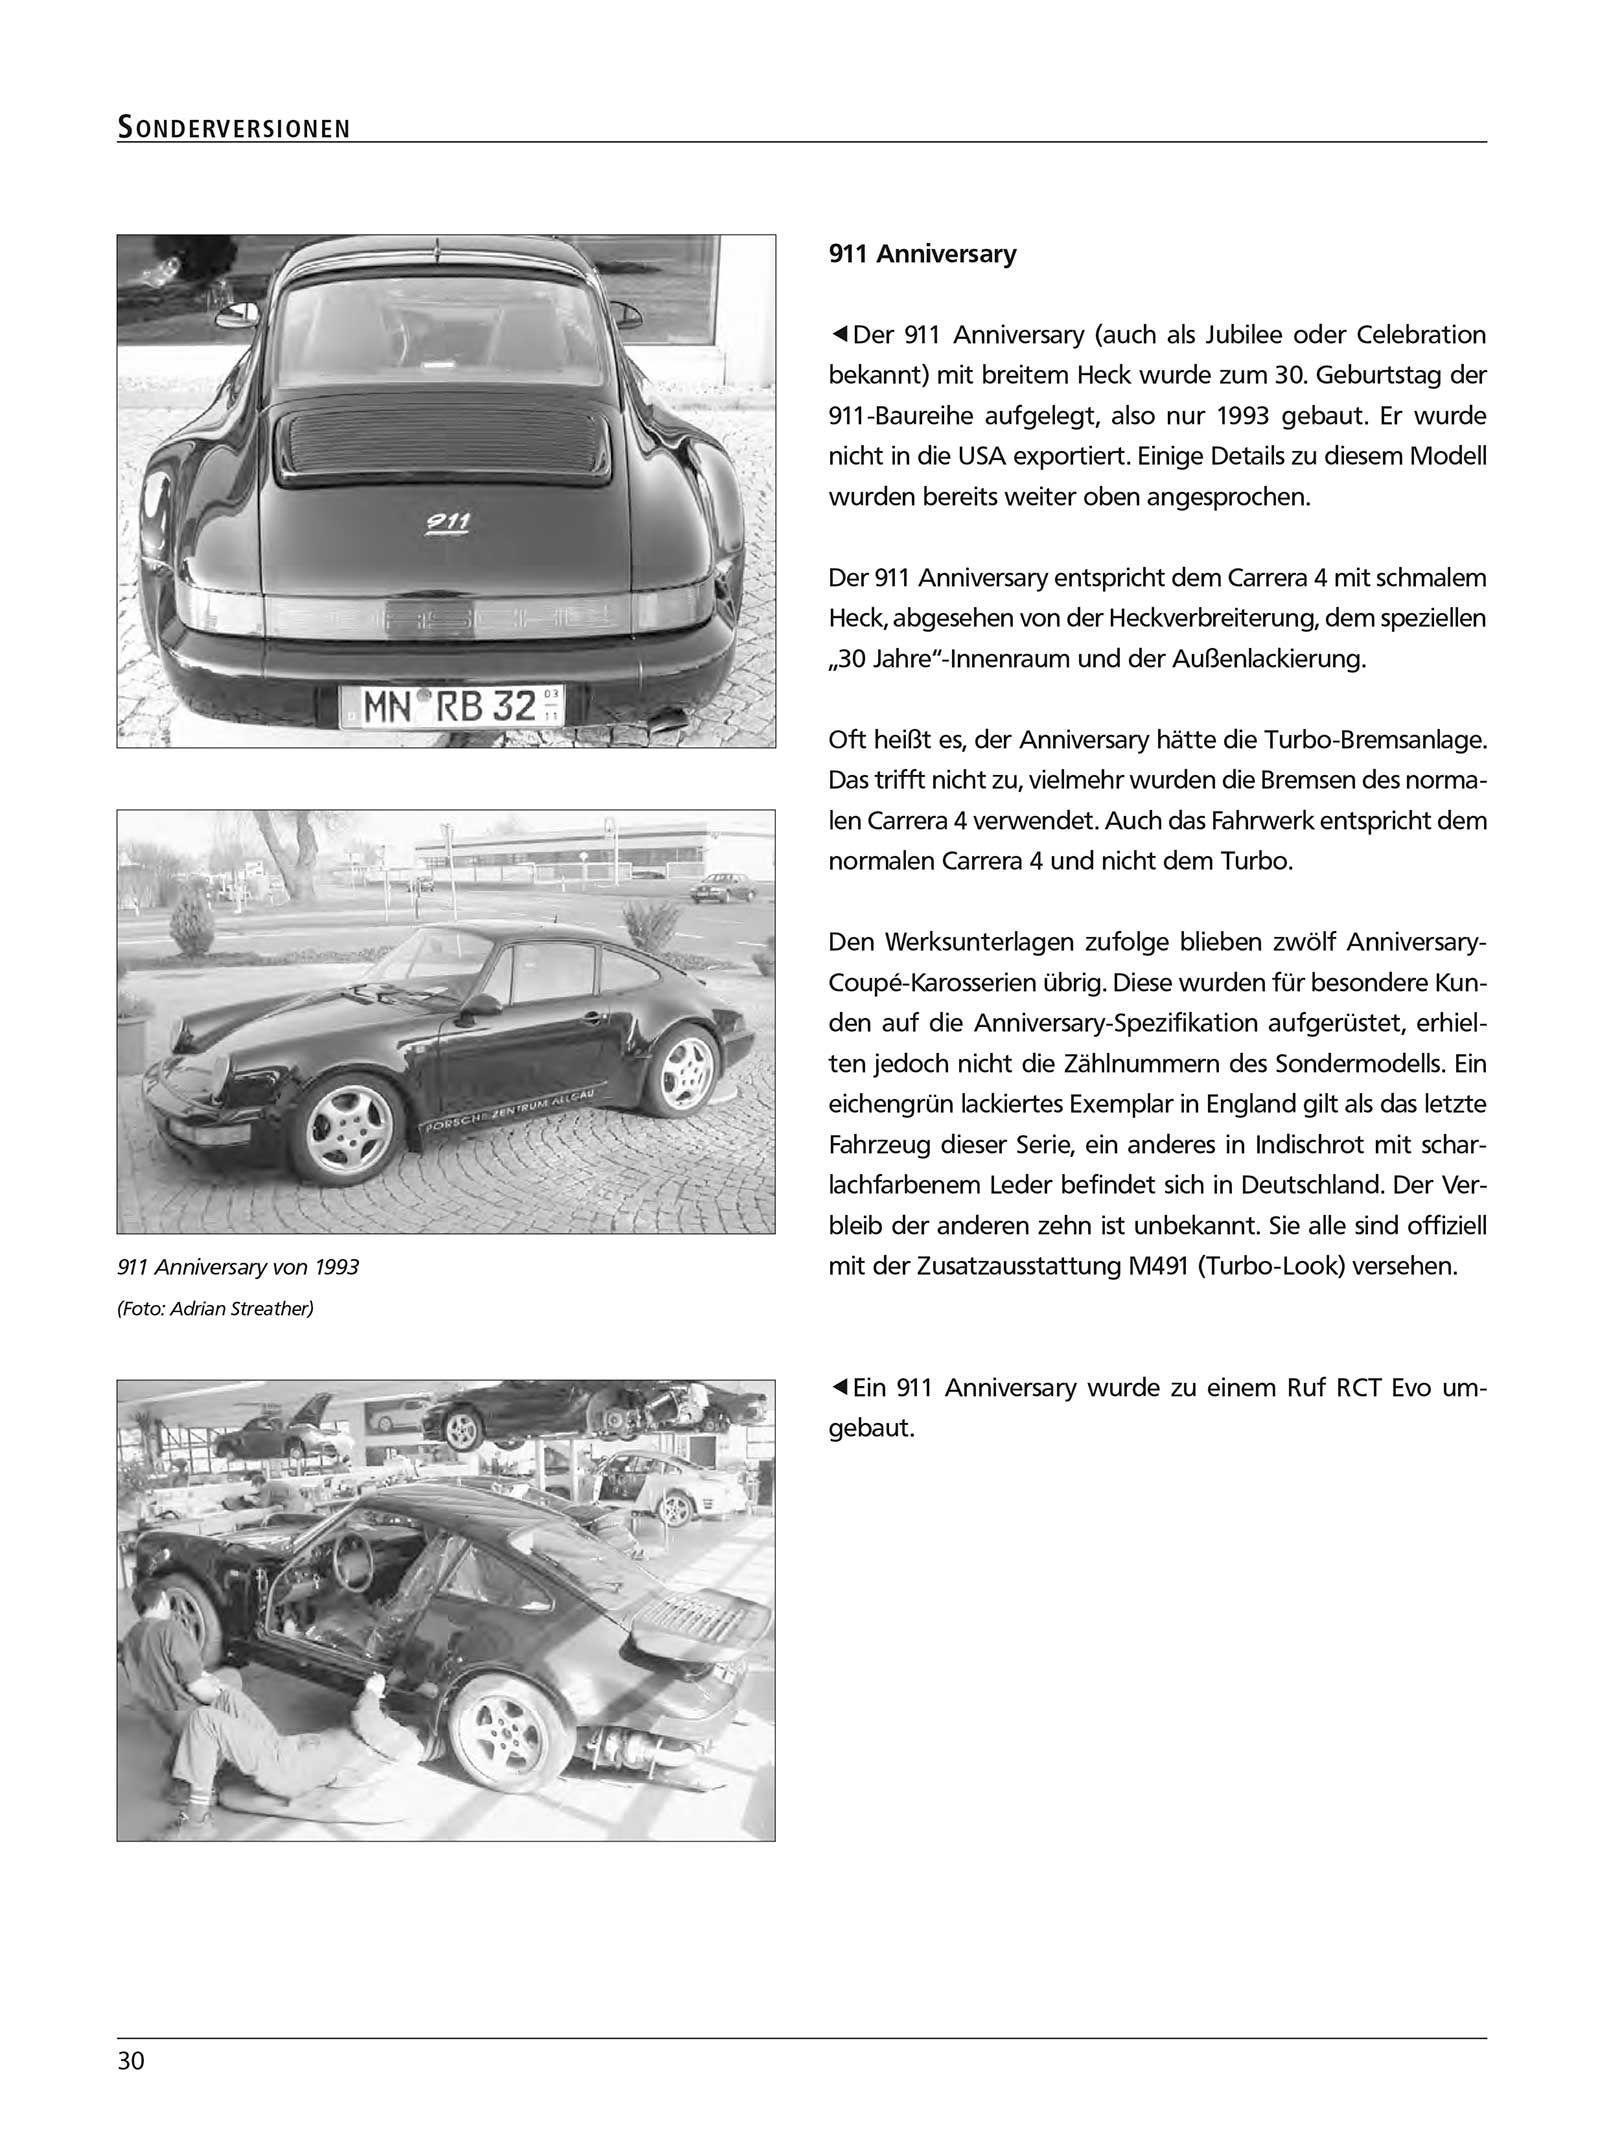 Betriebsanleitung Bedienungsanleitung Modelljahr 72 Porsche 911 S 